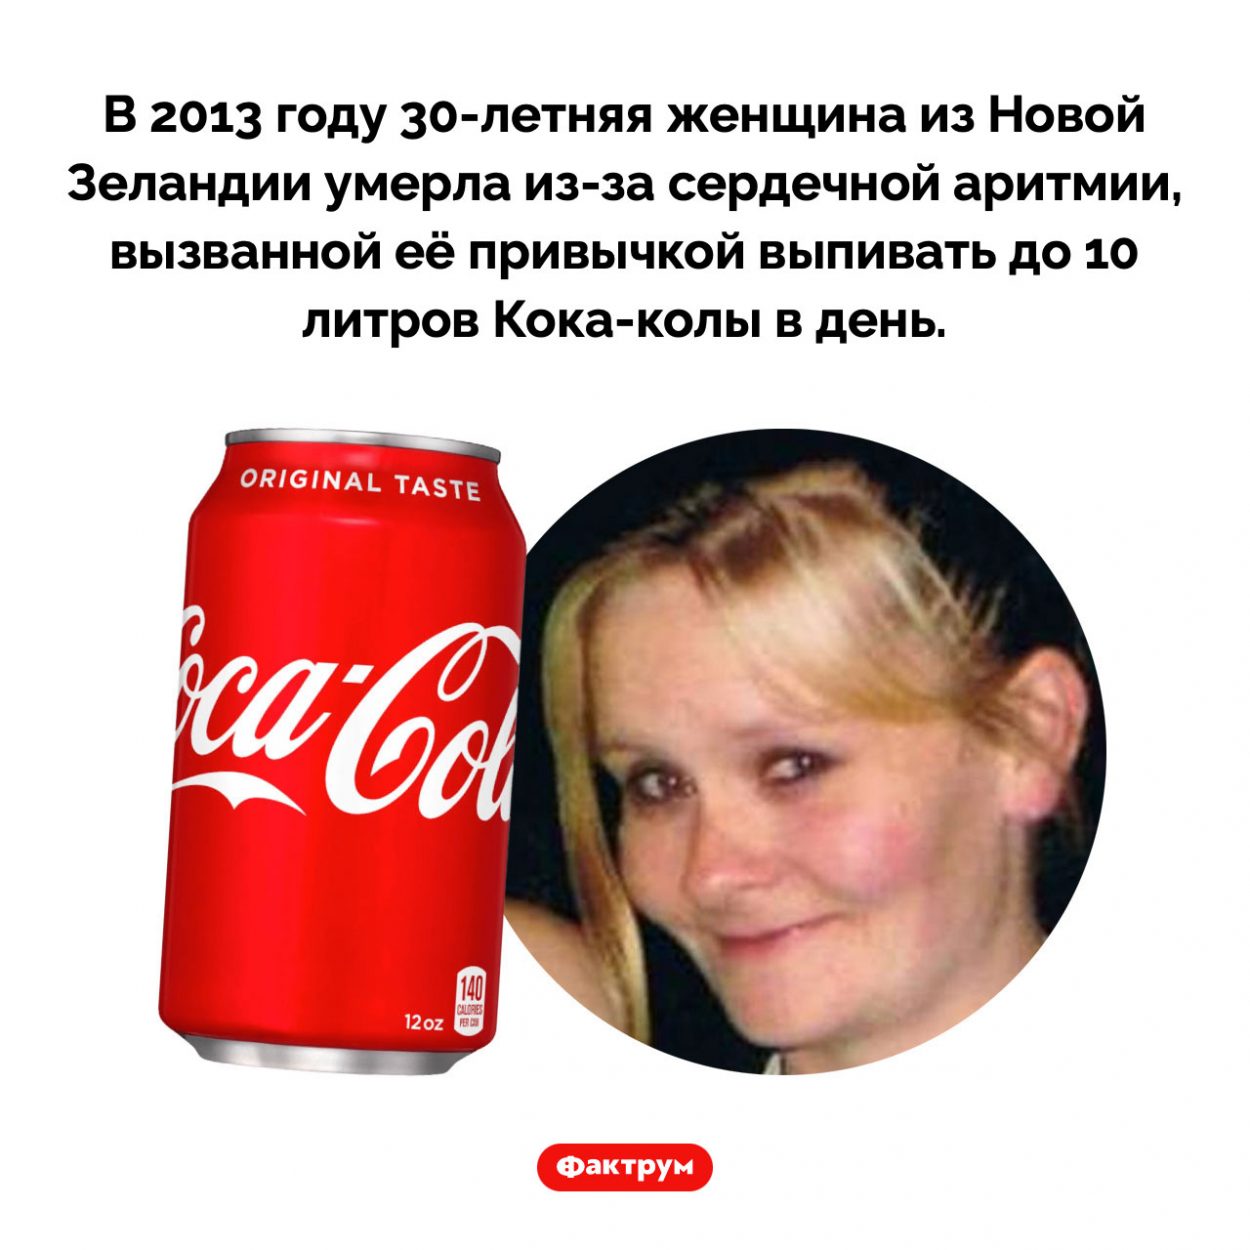 Чем опасна Кока-кола. В 2013 году 30-летняя женщина из Новой Зеландии умерла из-за сердечной аритмии, вызванной её привычкой выпивать до 10 литров Кока-колы в день.